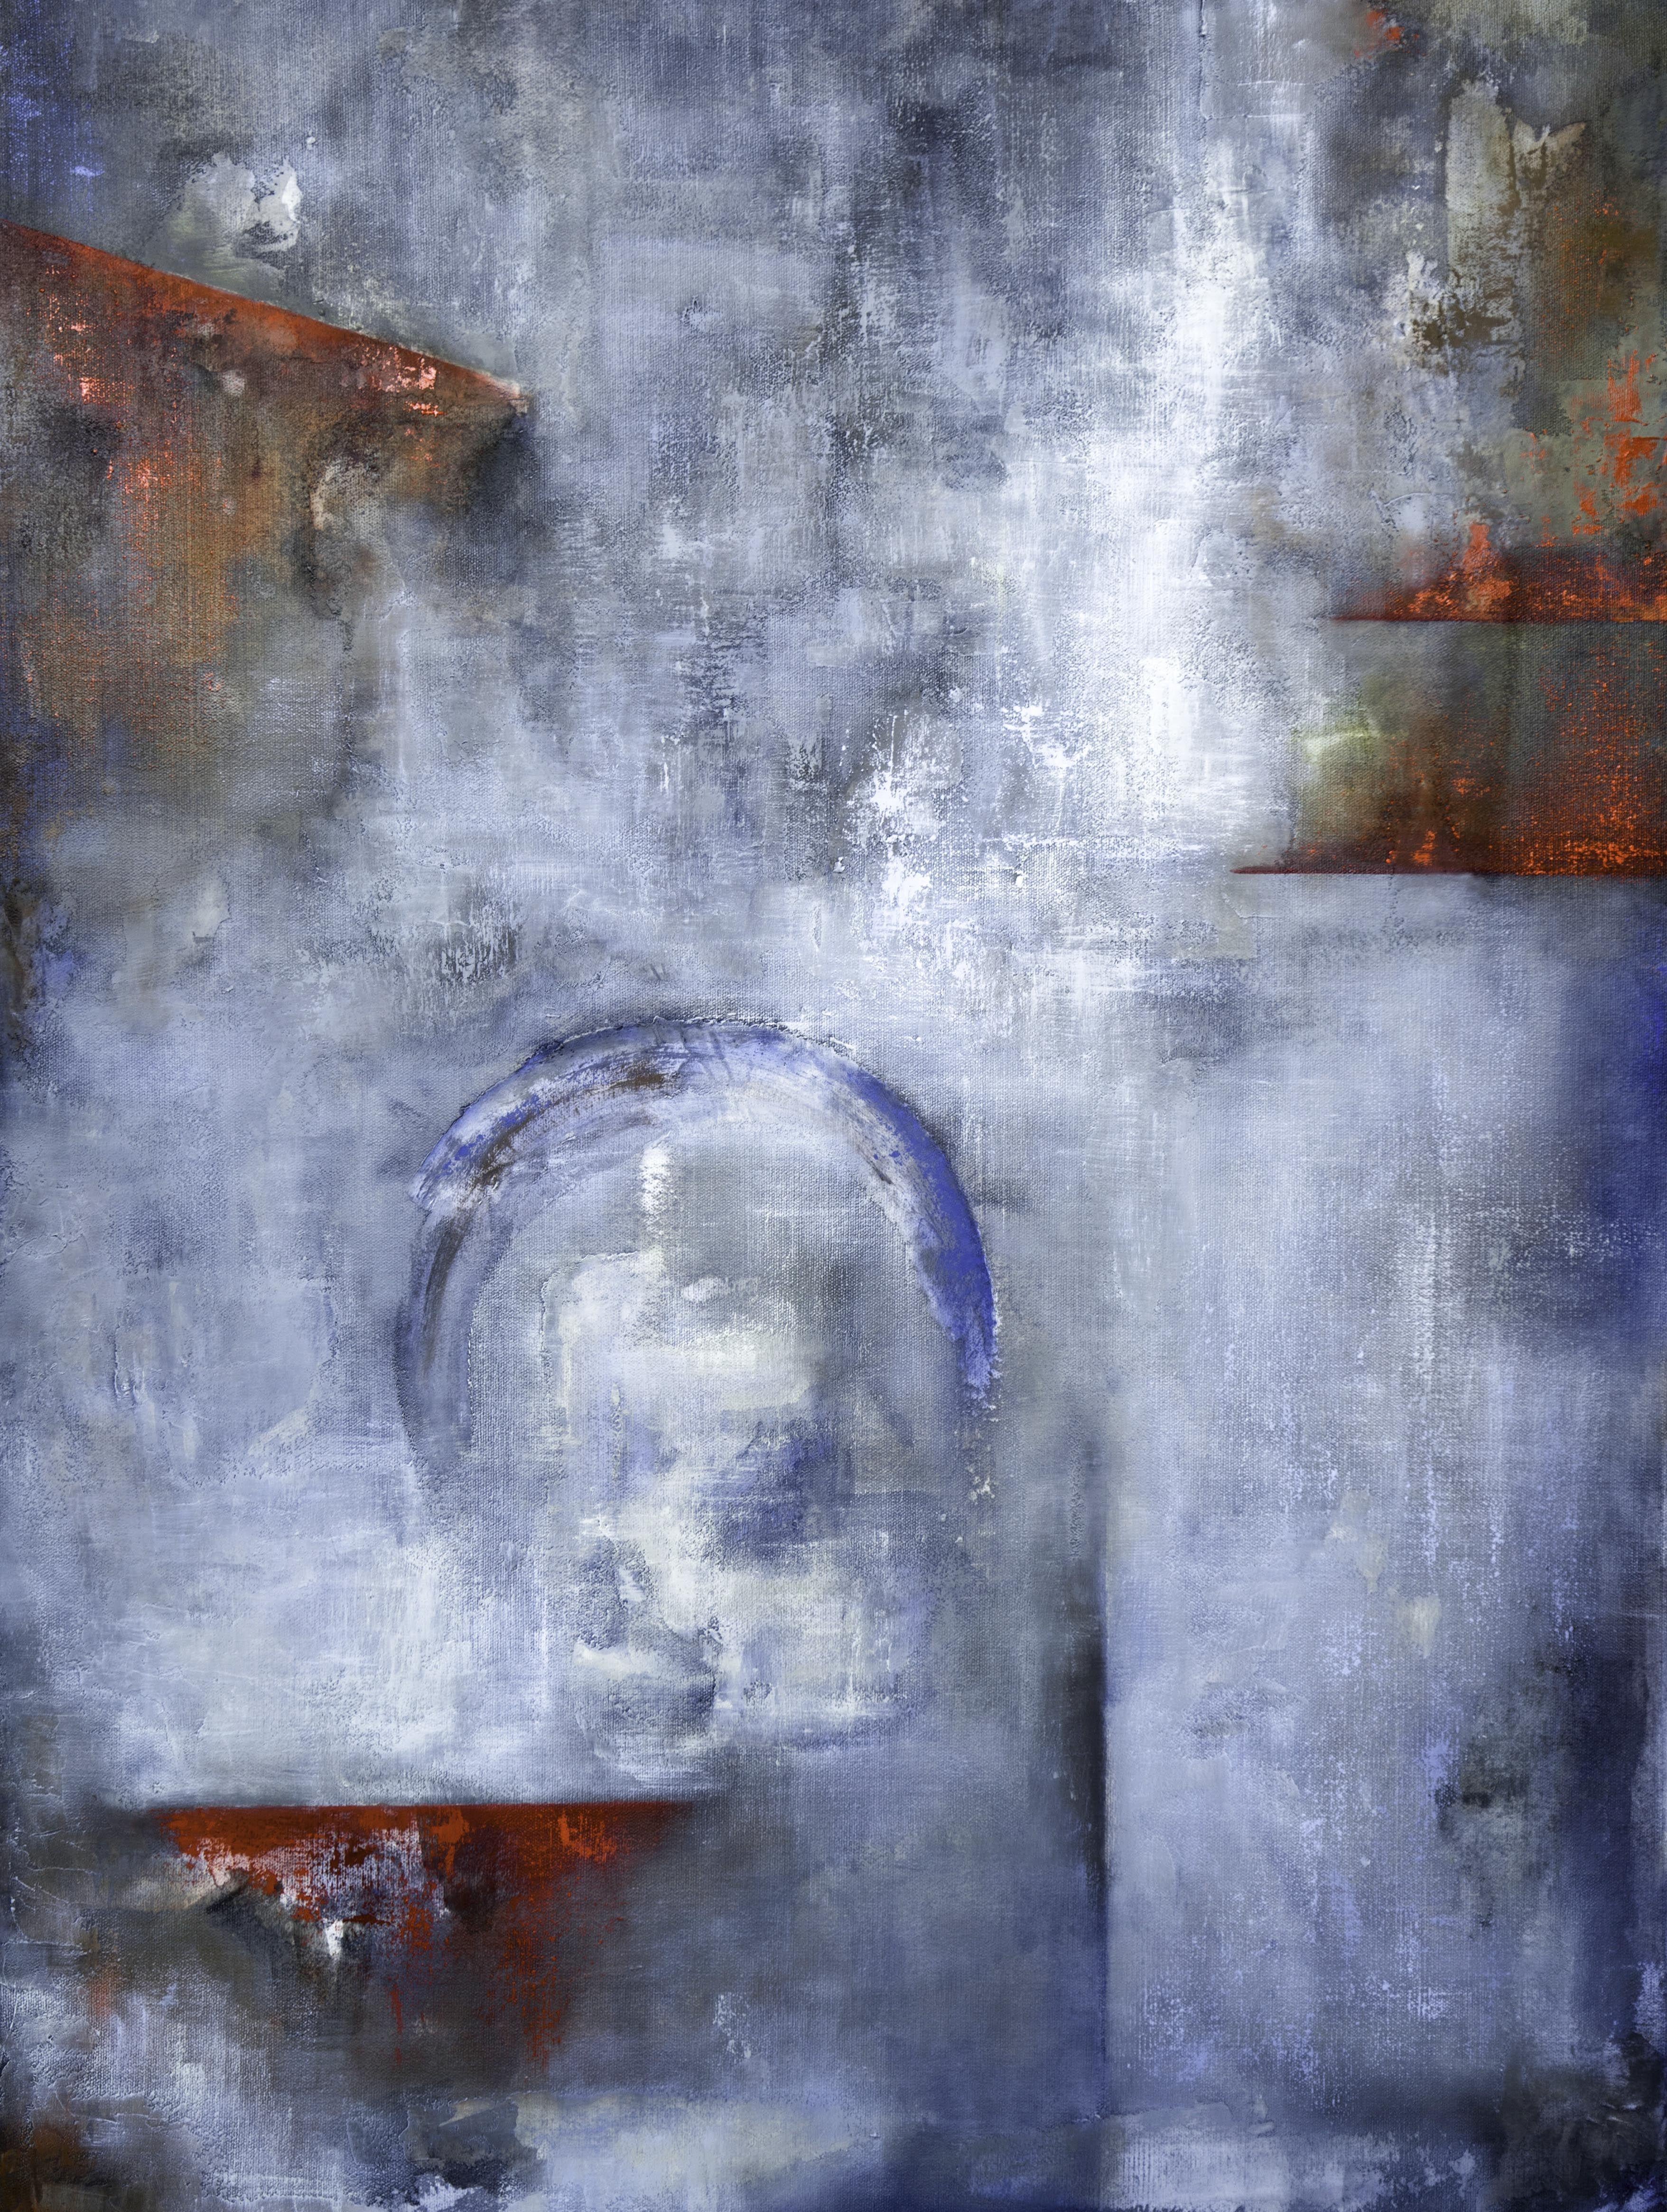 Abstract Painting Sofia Barroso - Nuances de bleu, peinture, huile sur toile